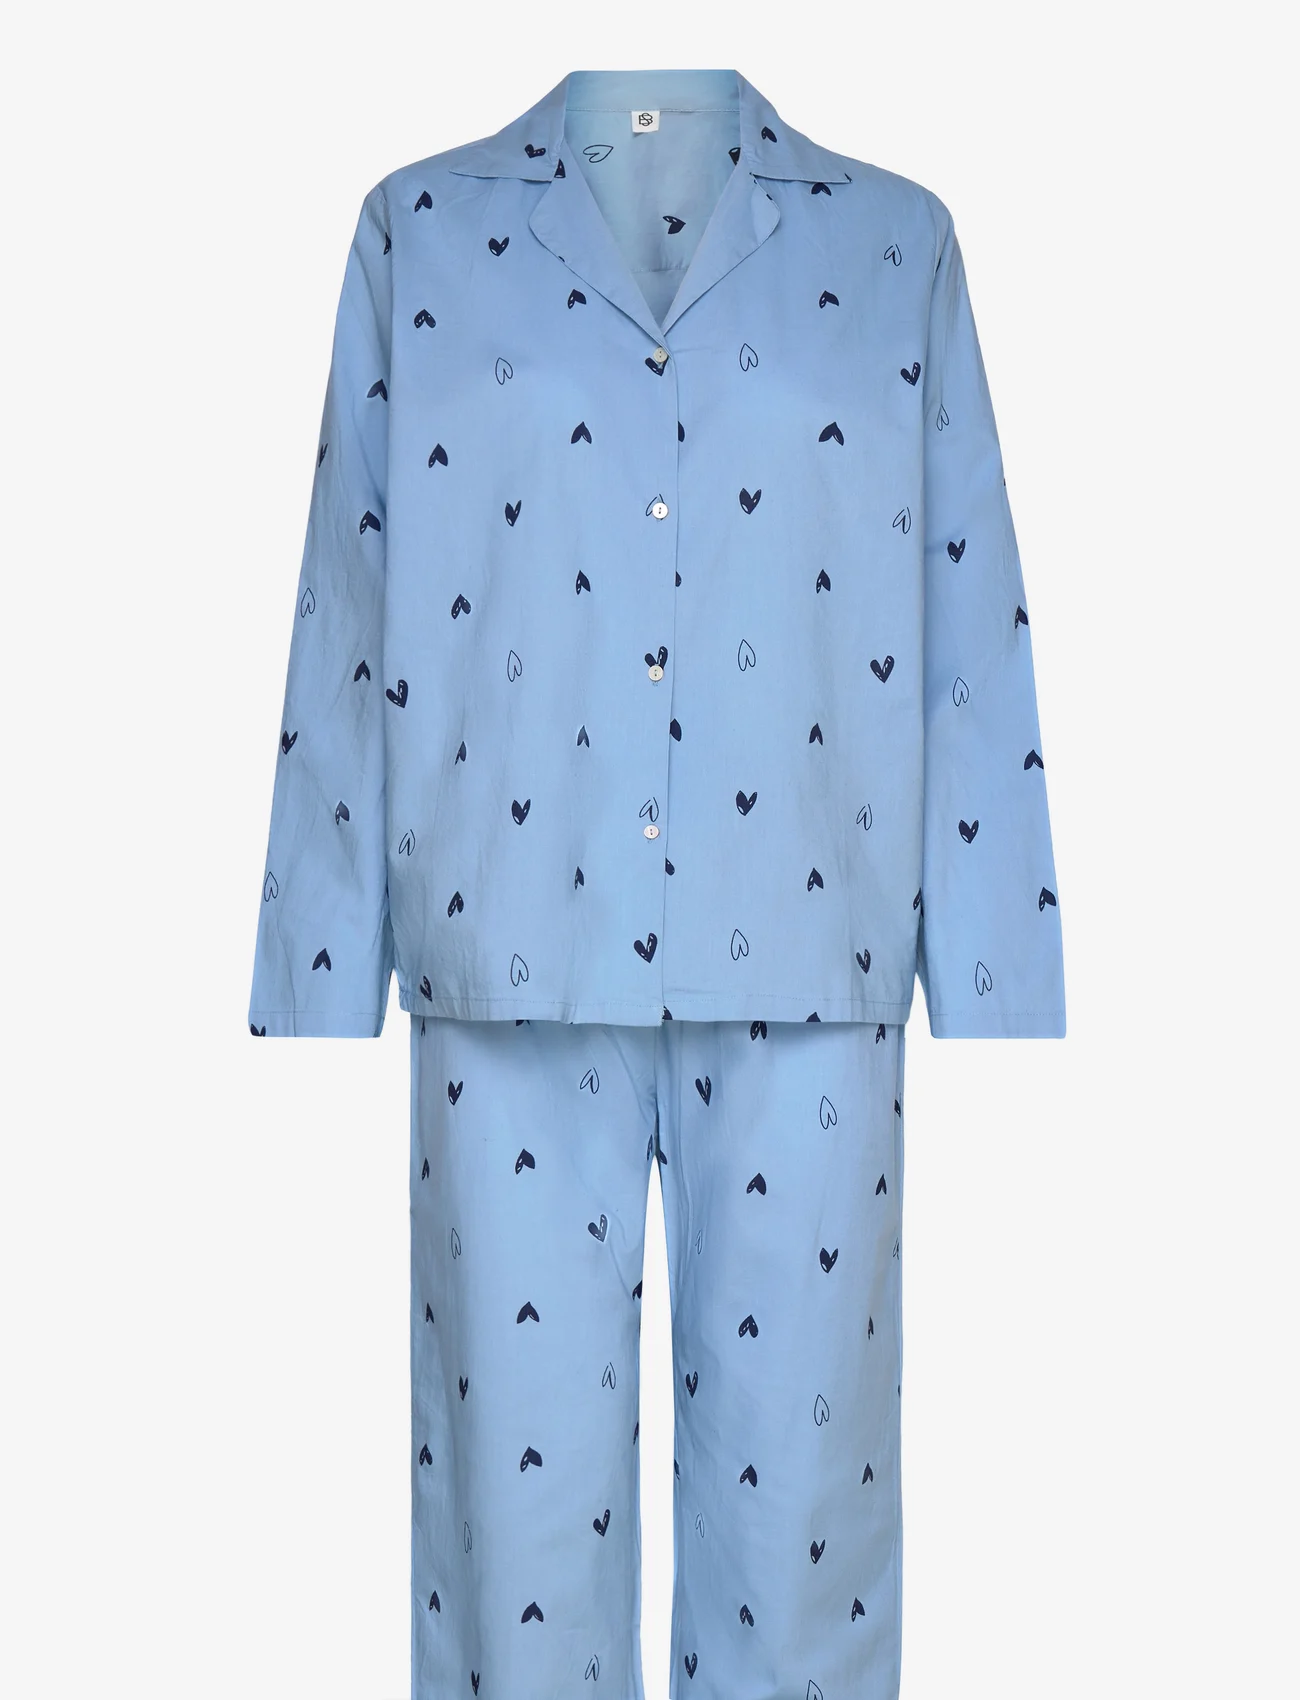 Becksöndergaard - Archie Pyjamas Set - birthday gifts - vista blue - 0